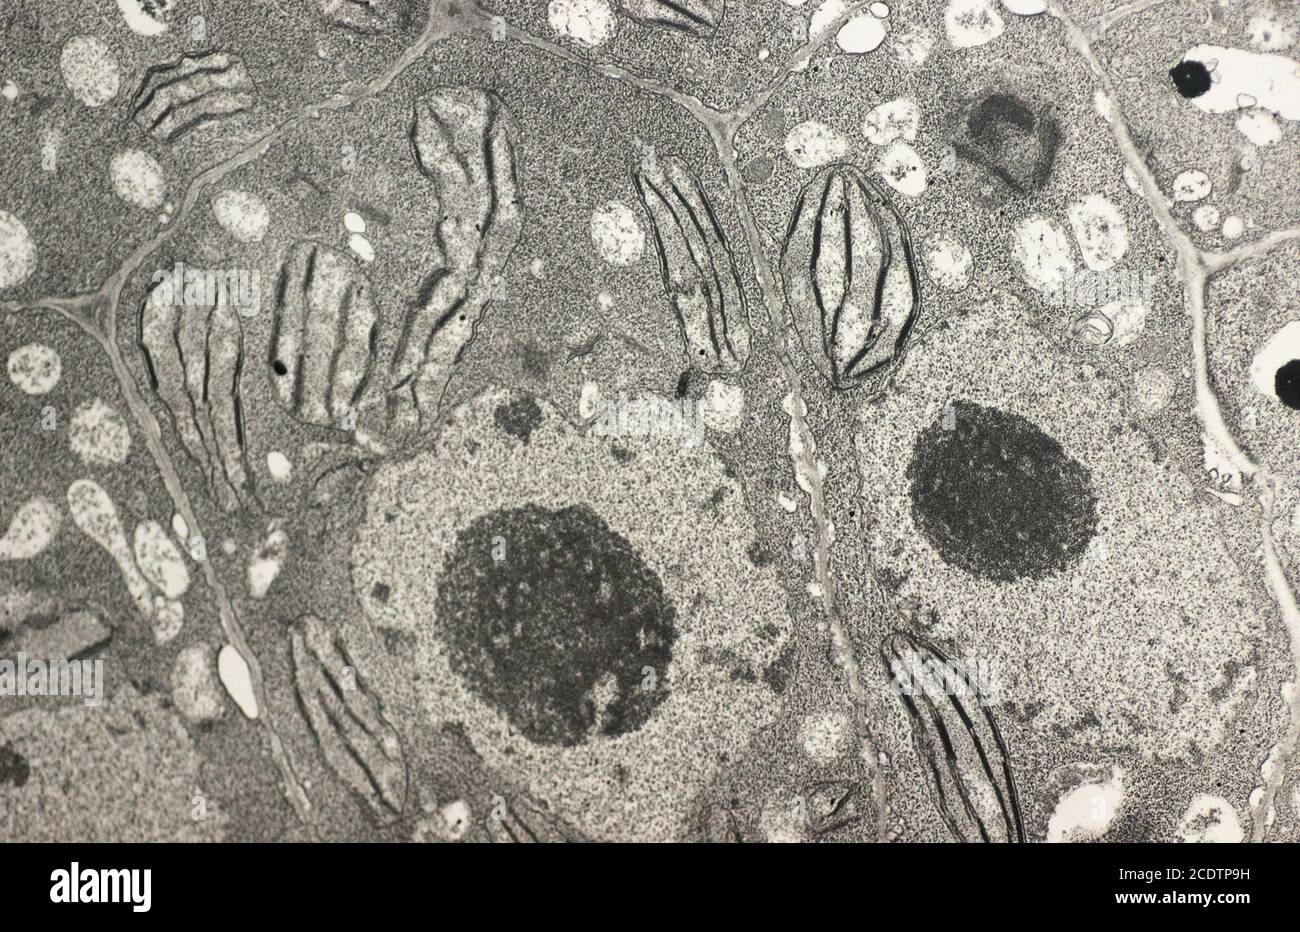 Cellula vegetale che mostra nucleo, parete cellulare, nucleoli, cloroplasto e amido. Una sezione ultrasottile di cellule mesofilliche di foglie di tabacco che mostrano la via cloroplastica Foto Stock